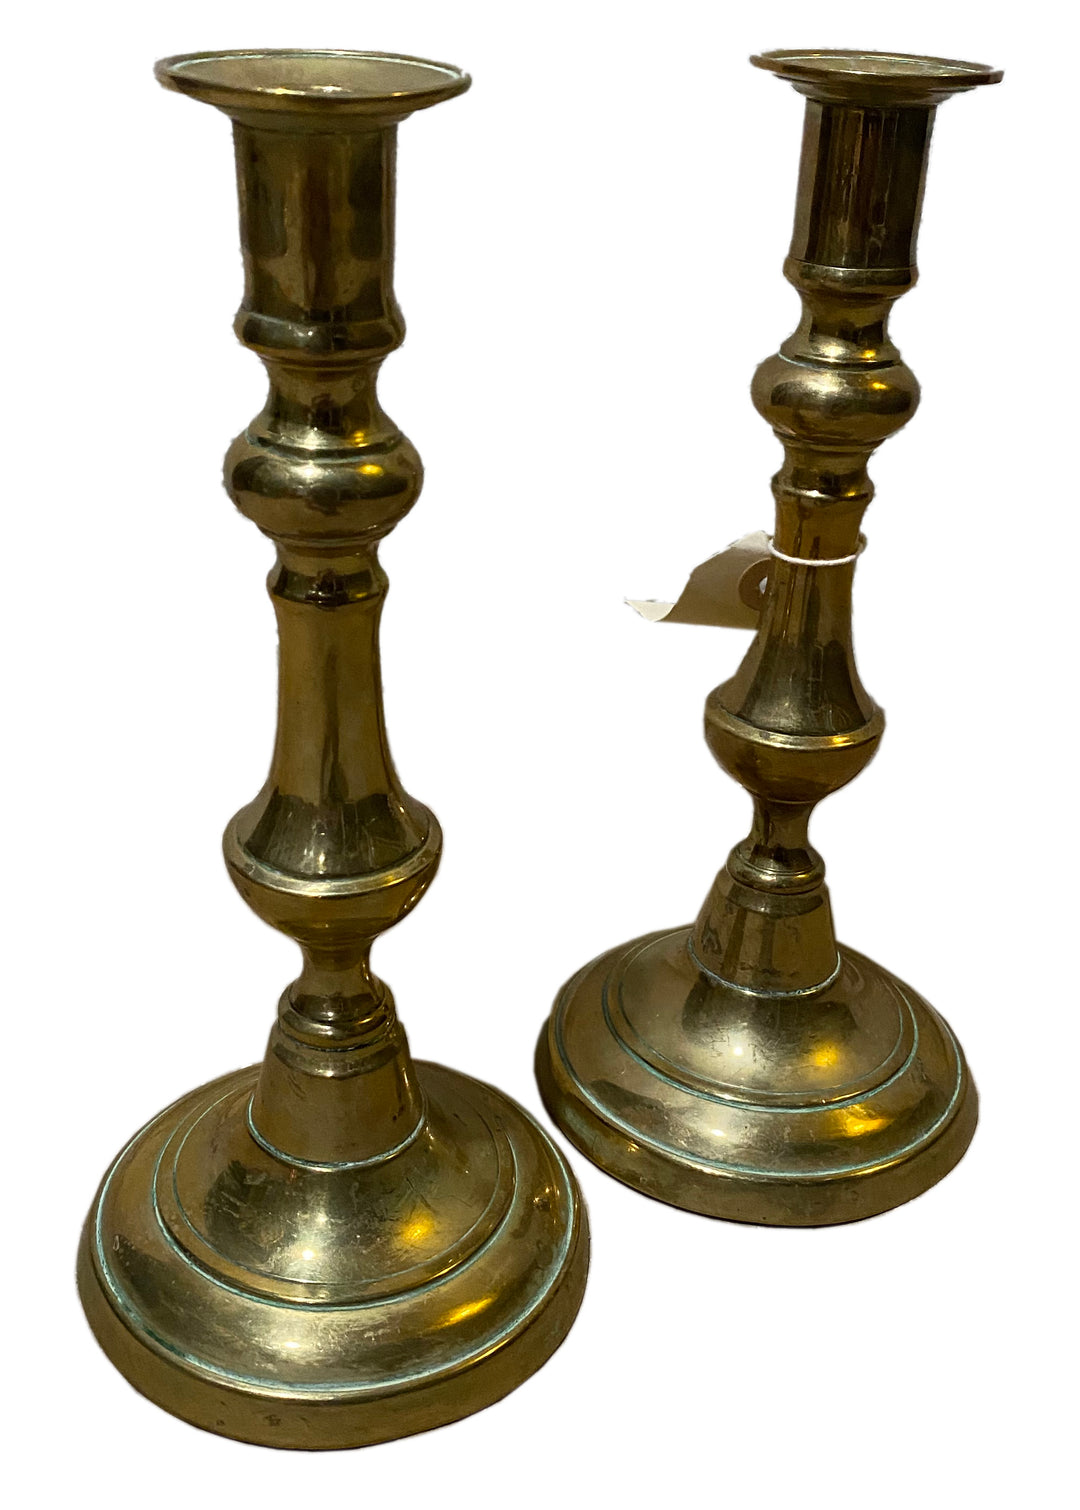 Antique Pair of Queen Anne Spun Brass Candlesticks